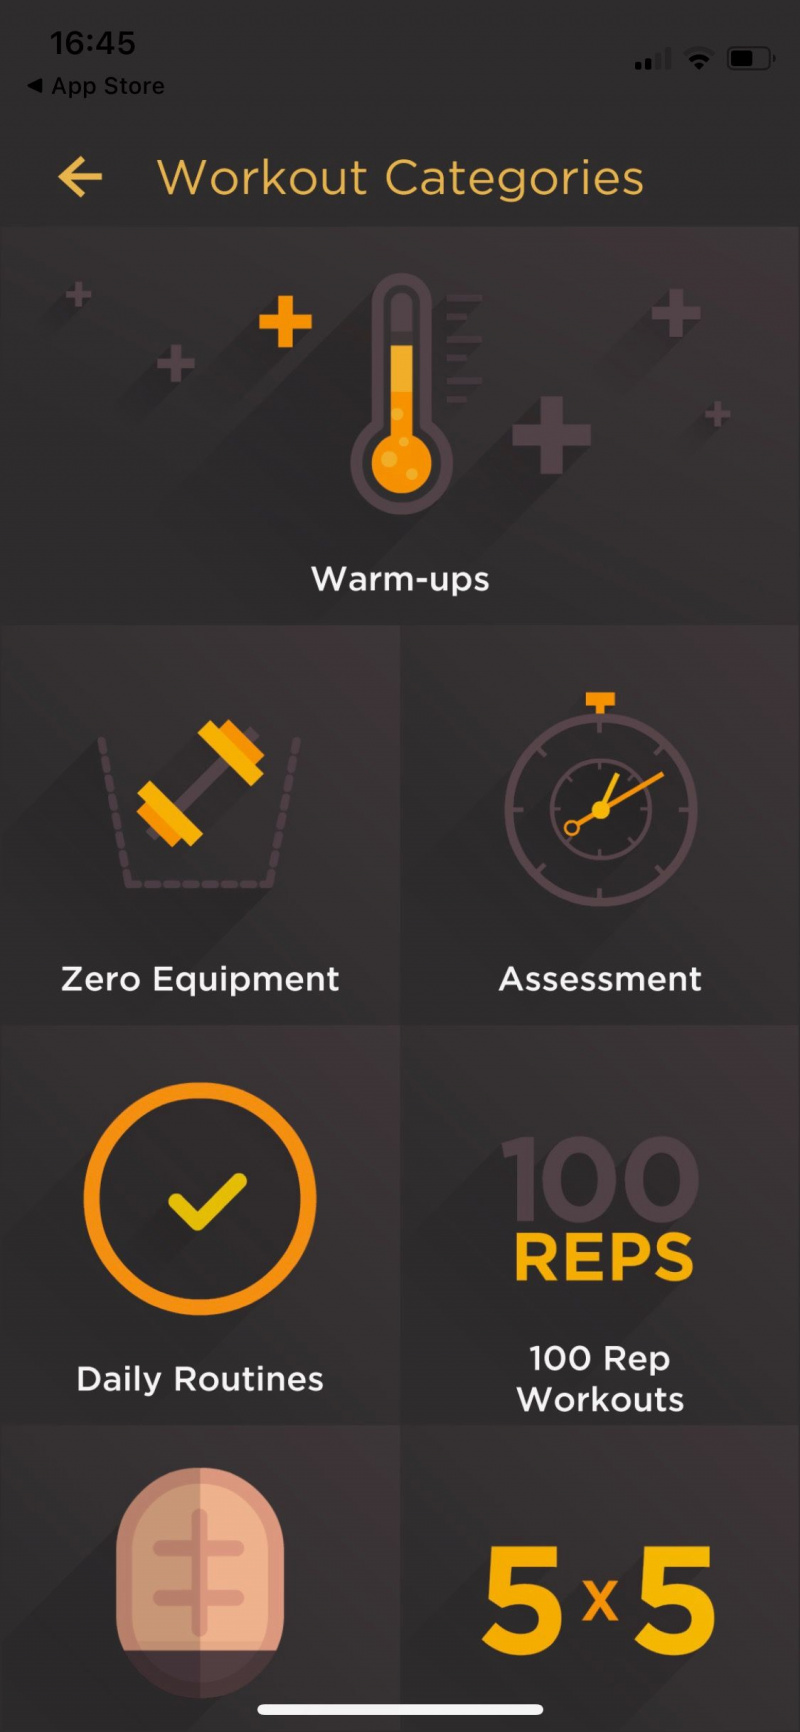   Captura de pantalla de la aplicación Al Kavado que muestra categorías de entrenamiento